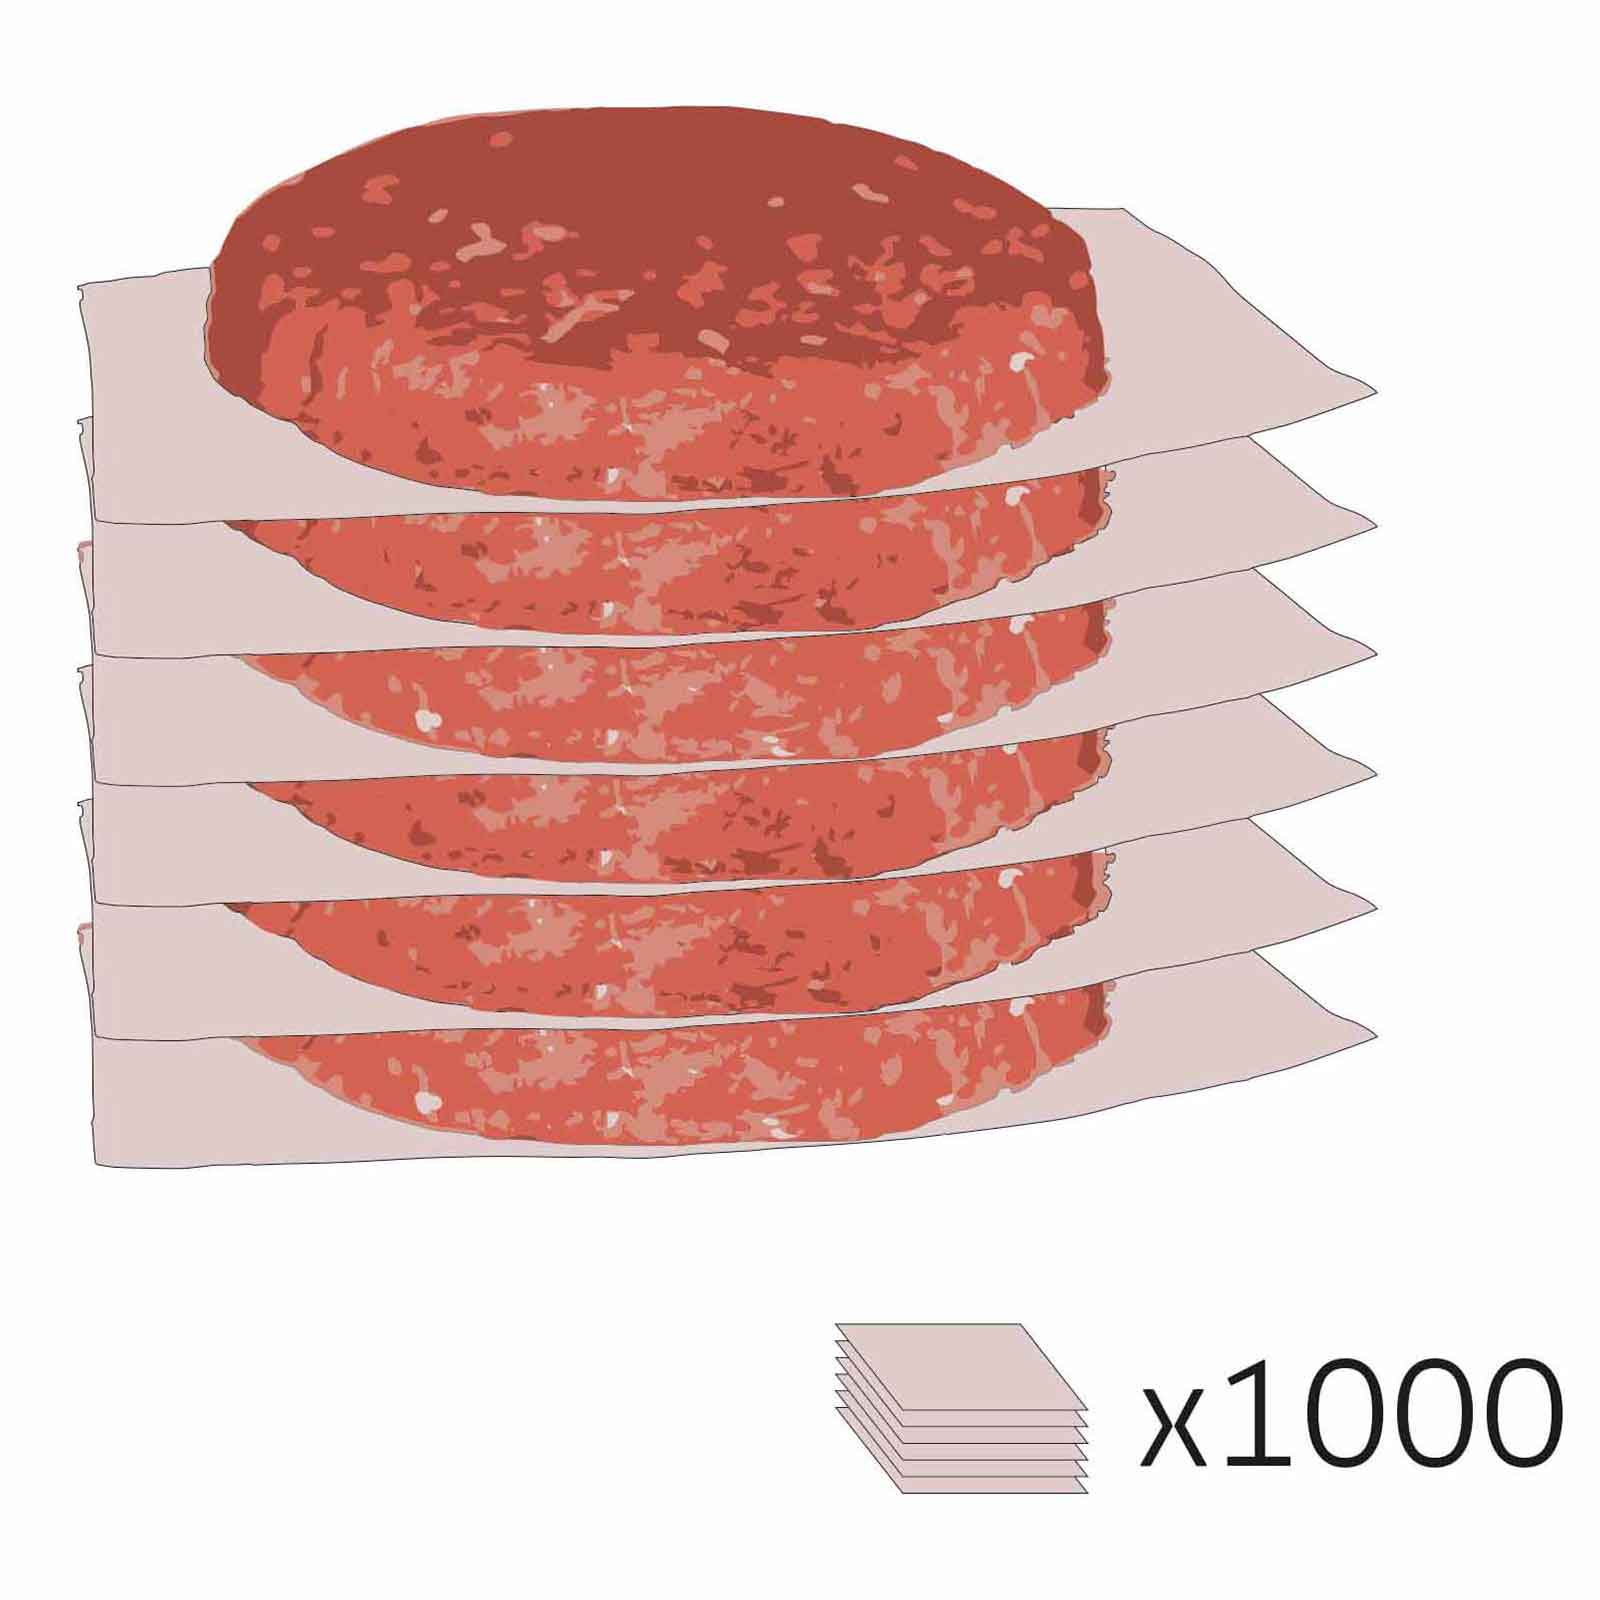 Papierzwischenlage für Burger 1000 Stk.